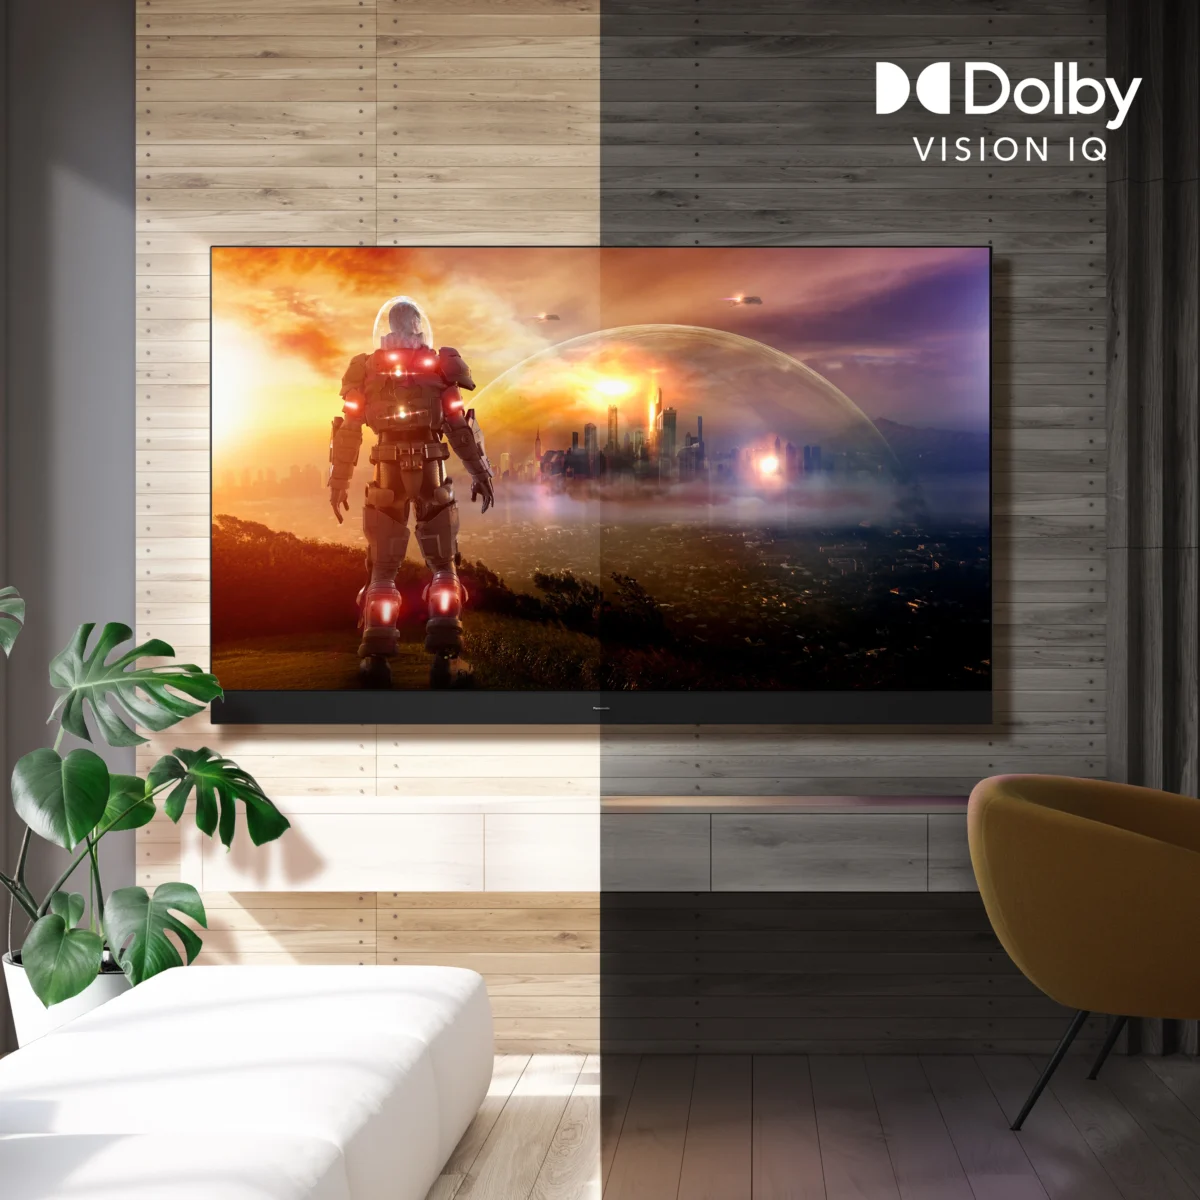 Dolby Vision IQ sorgt für Echtzeitmessungen und ein perfektes Heimkinoerlebnis